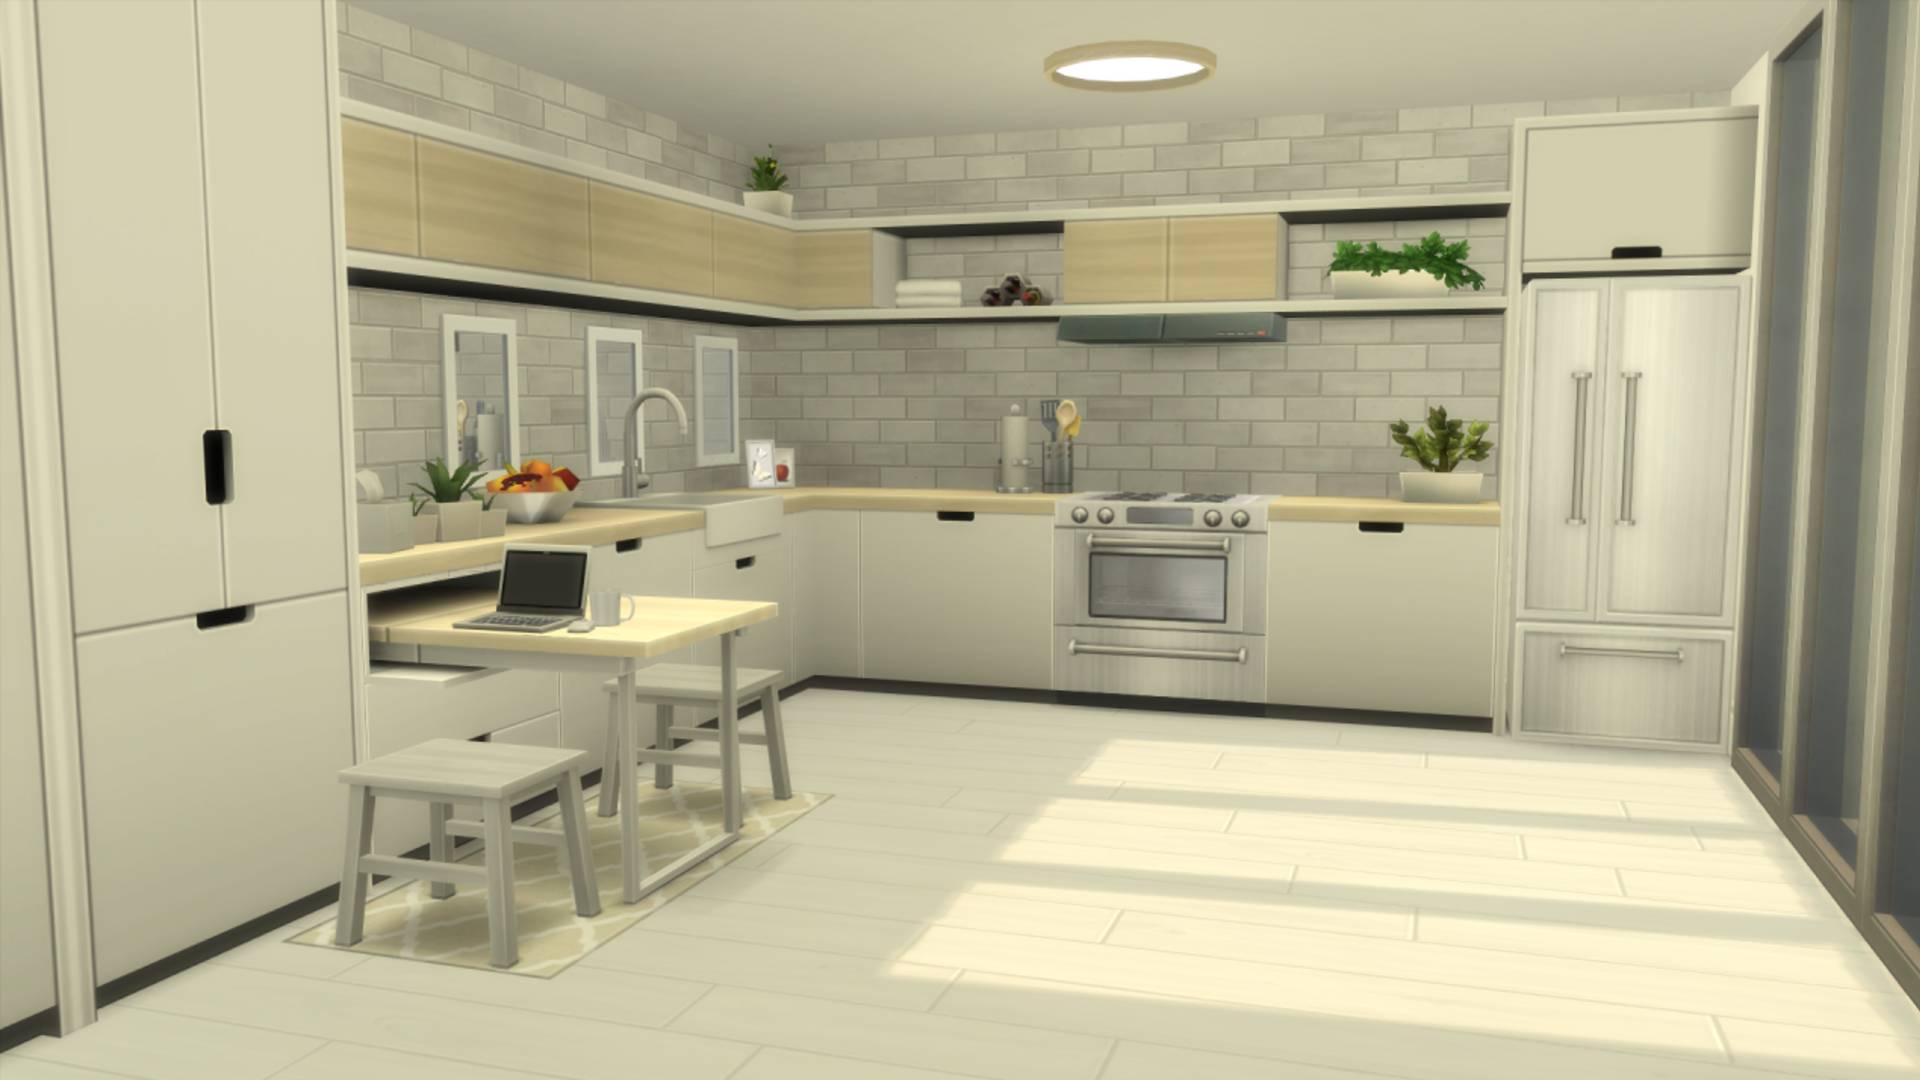 Sims 4 CC: una cocina que combina con el aspecto minimalista de la sala de estar, incluida una mesa de desayuno extraíble adjunta a uno de los muebles de cocina.